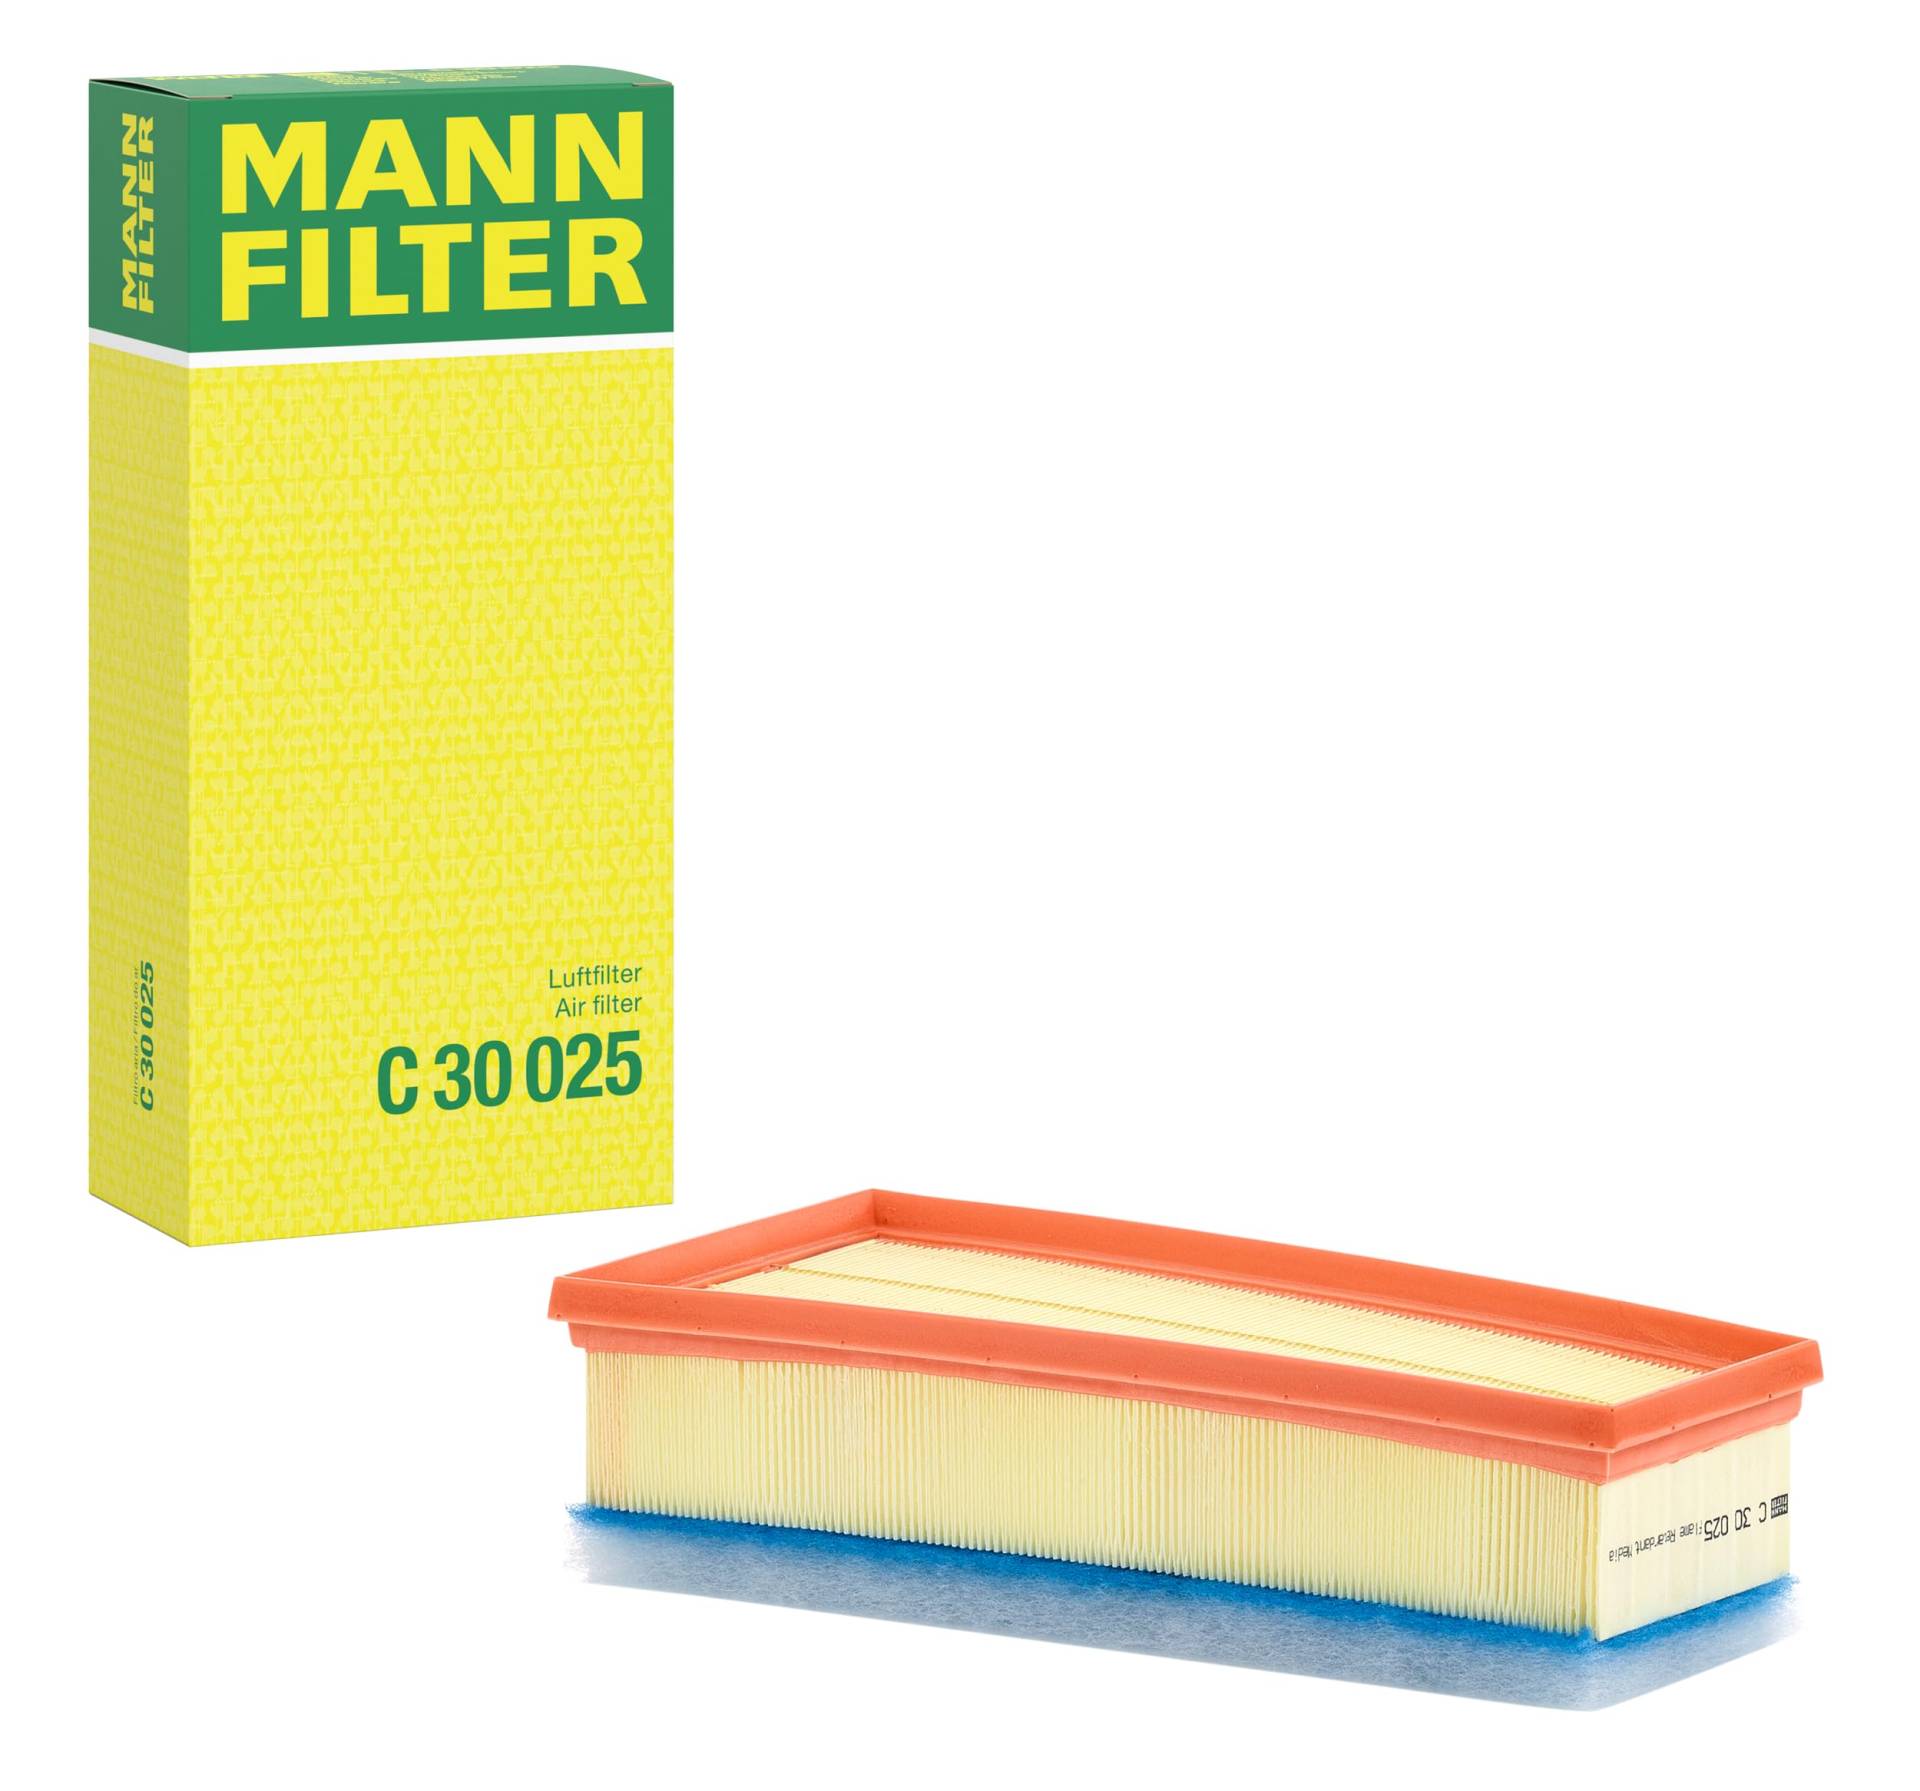 Mann-filter C 30 025 - Luftfilter von MANN-FILTER